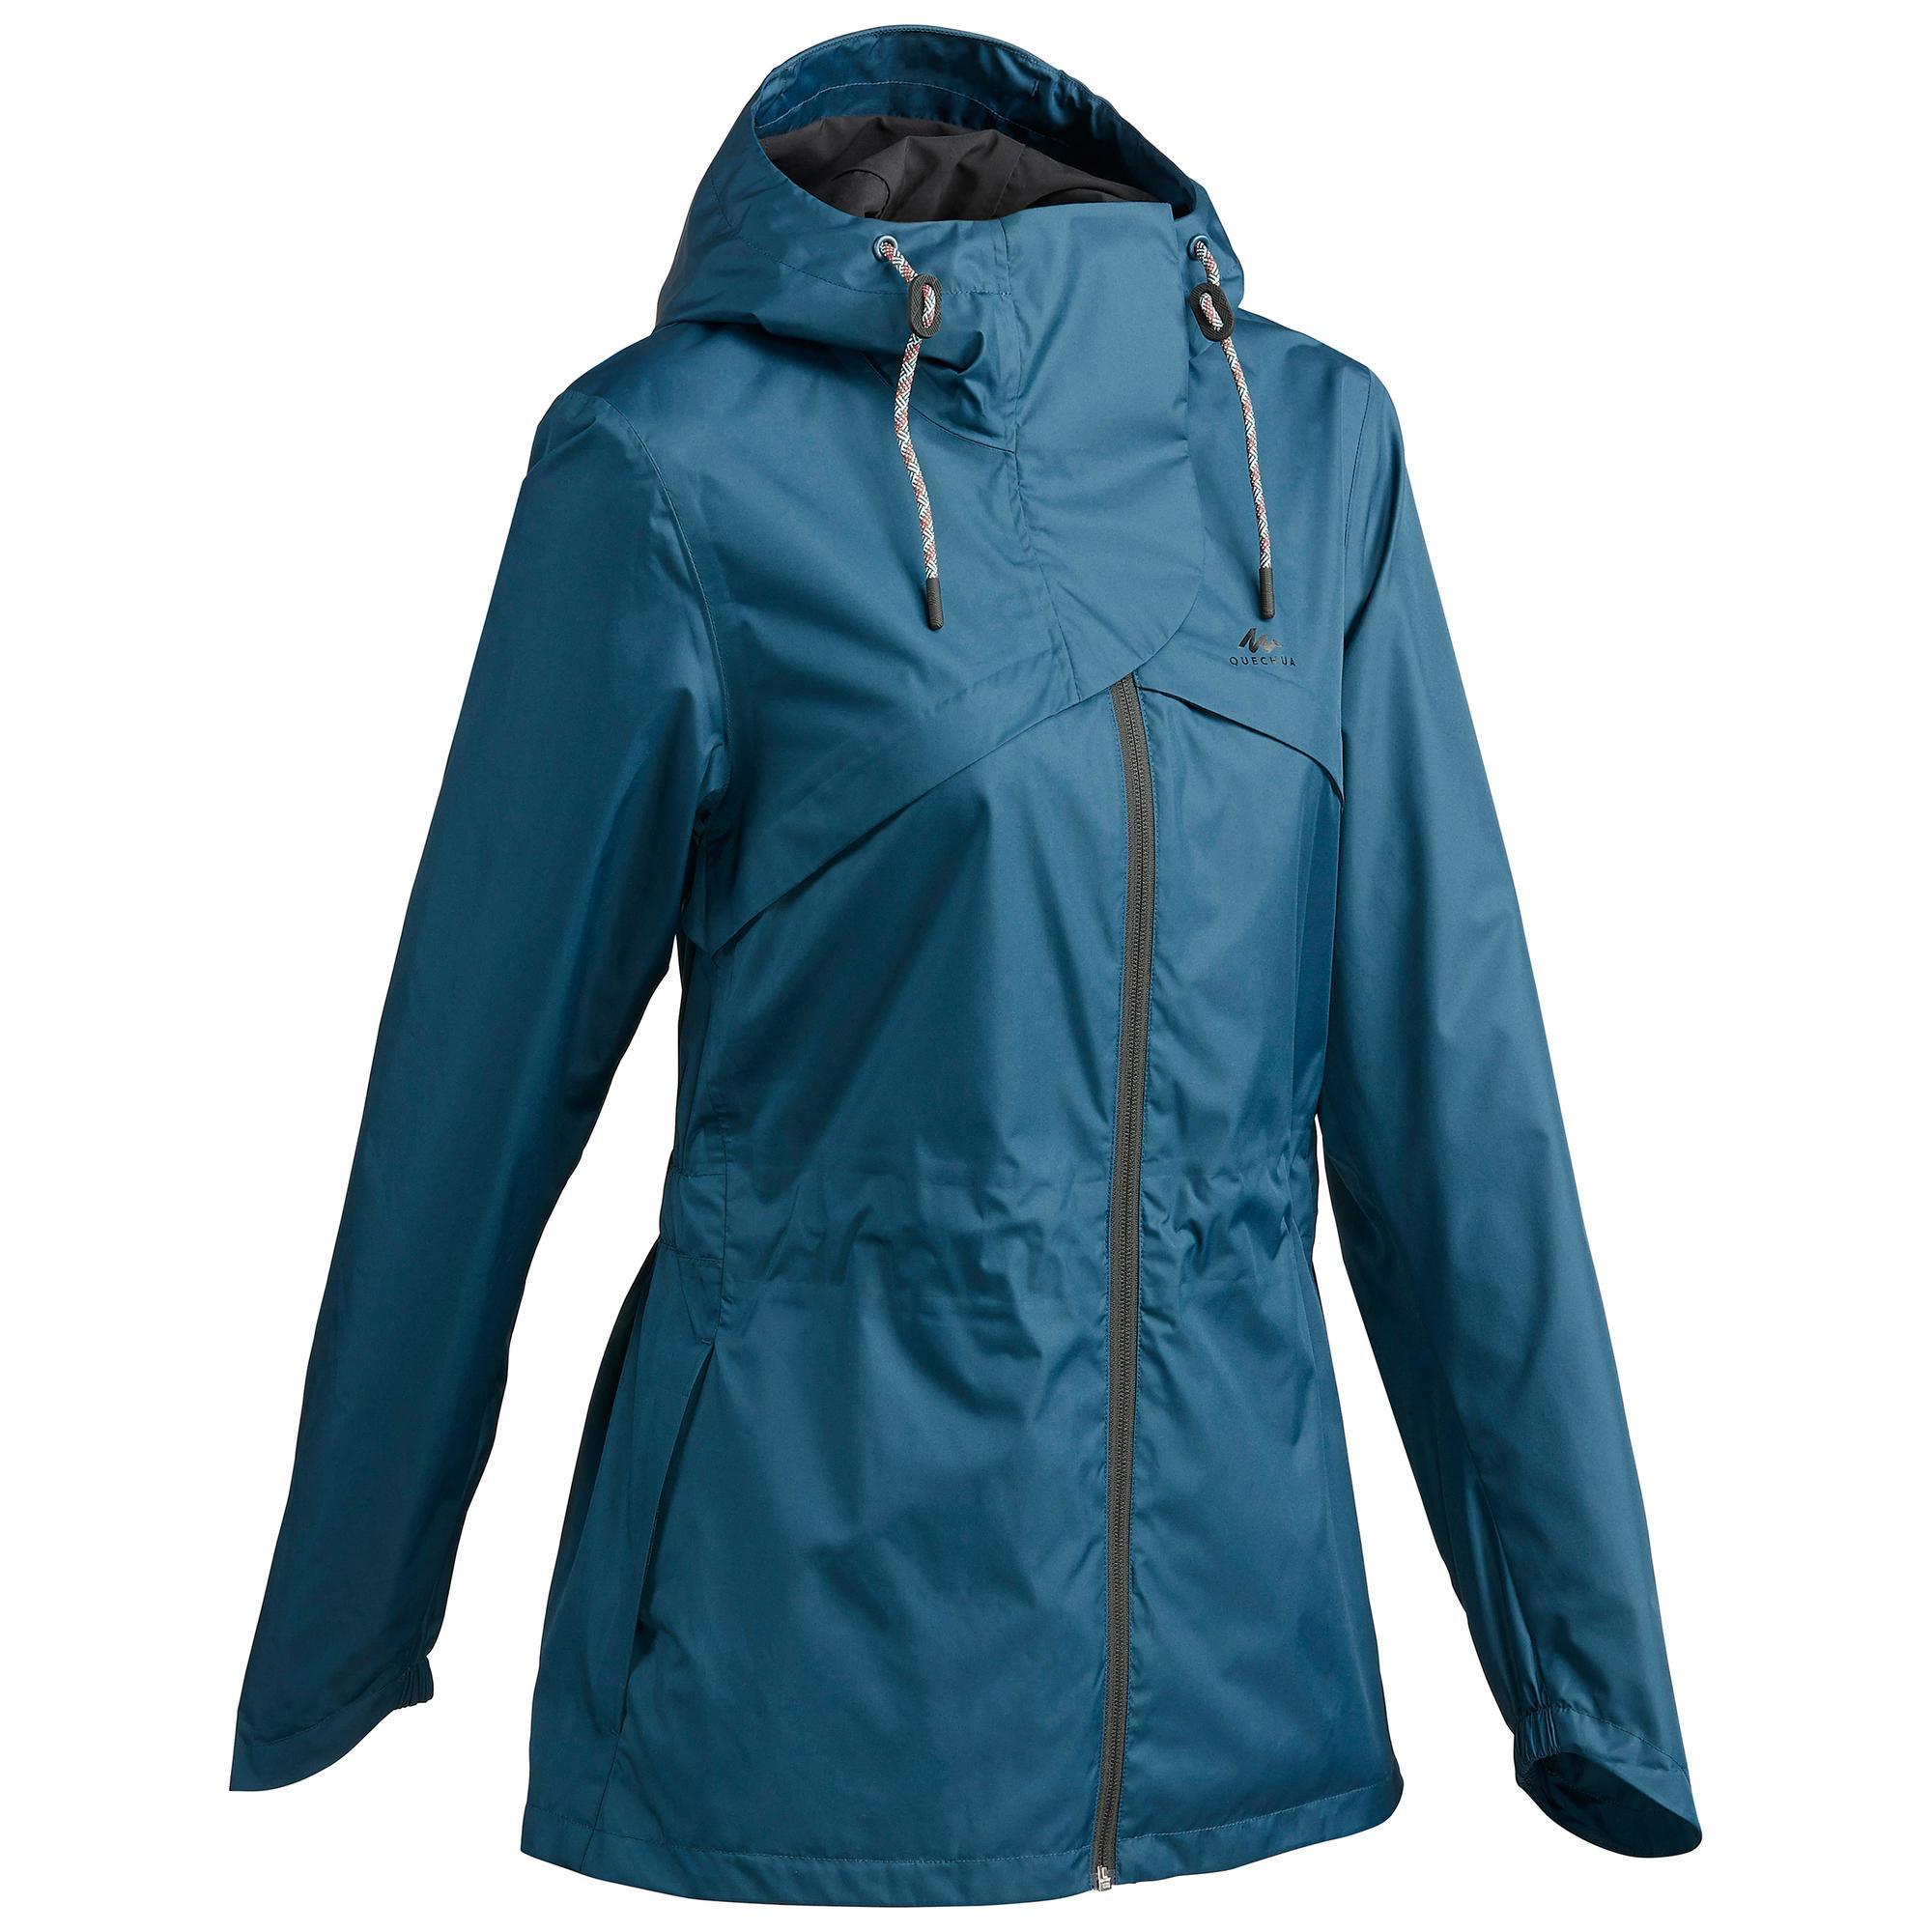 NH500 Women's Waterproof Walking Jacket 